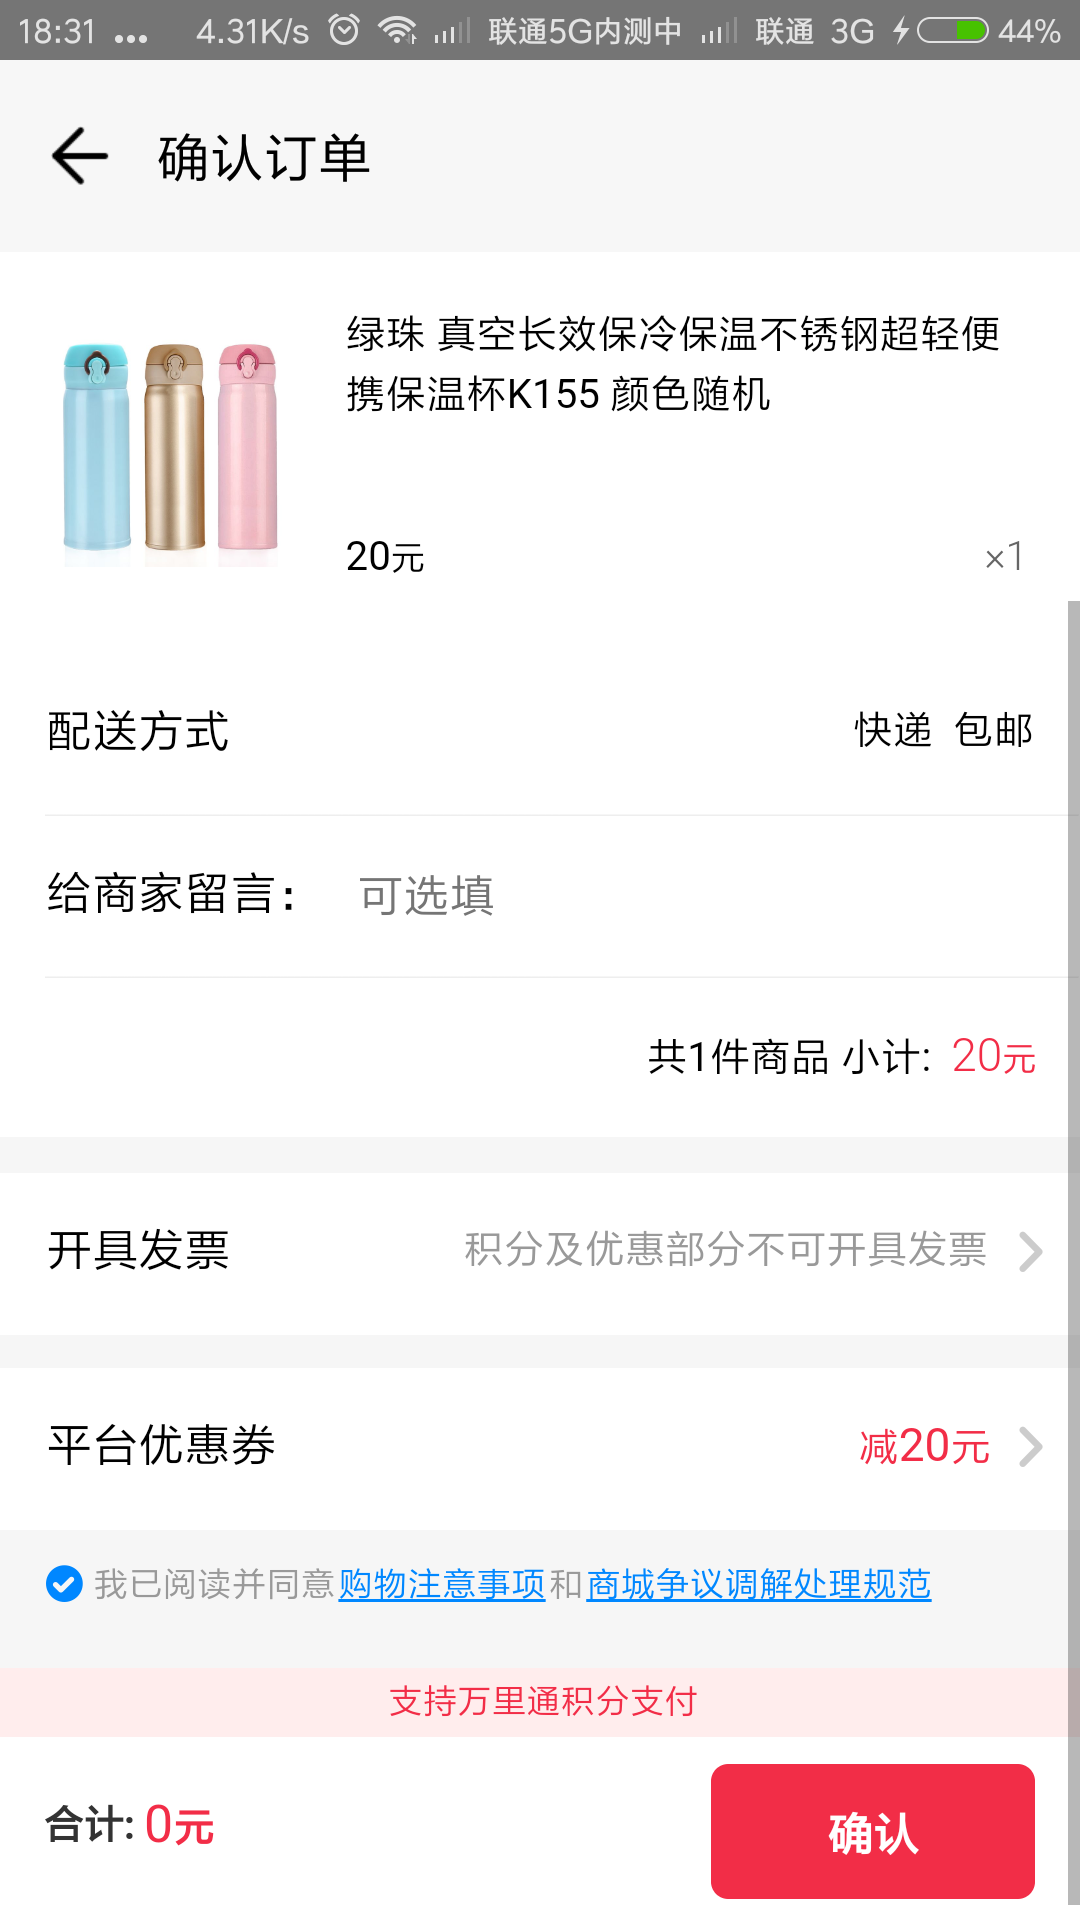 Screenshot_2018-07-24-18-31-53-367_com.paic.zhifu.wallet.activity.png